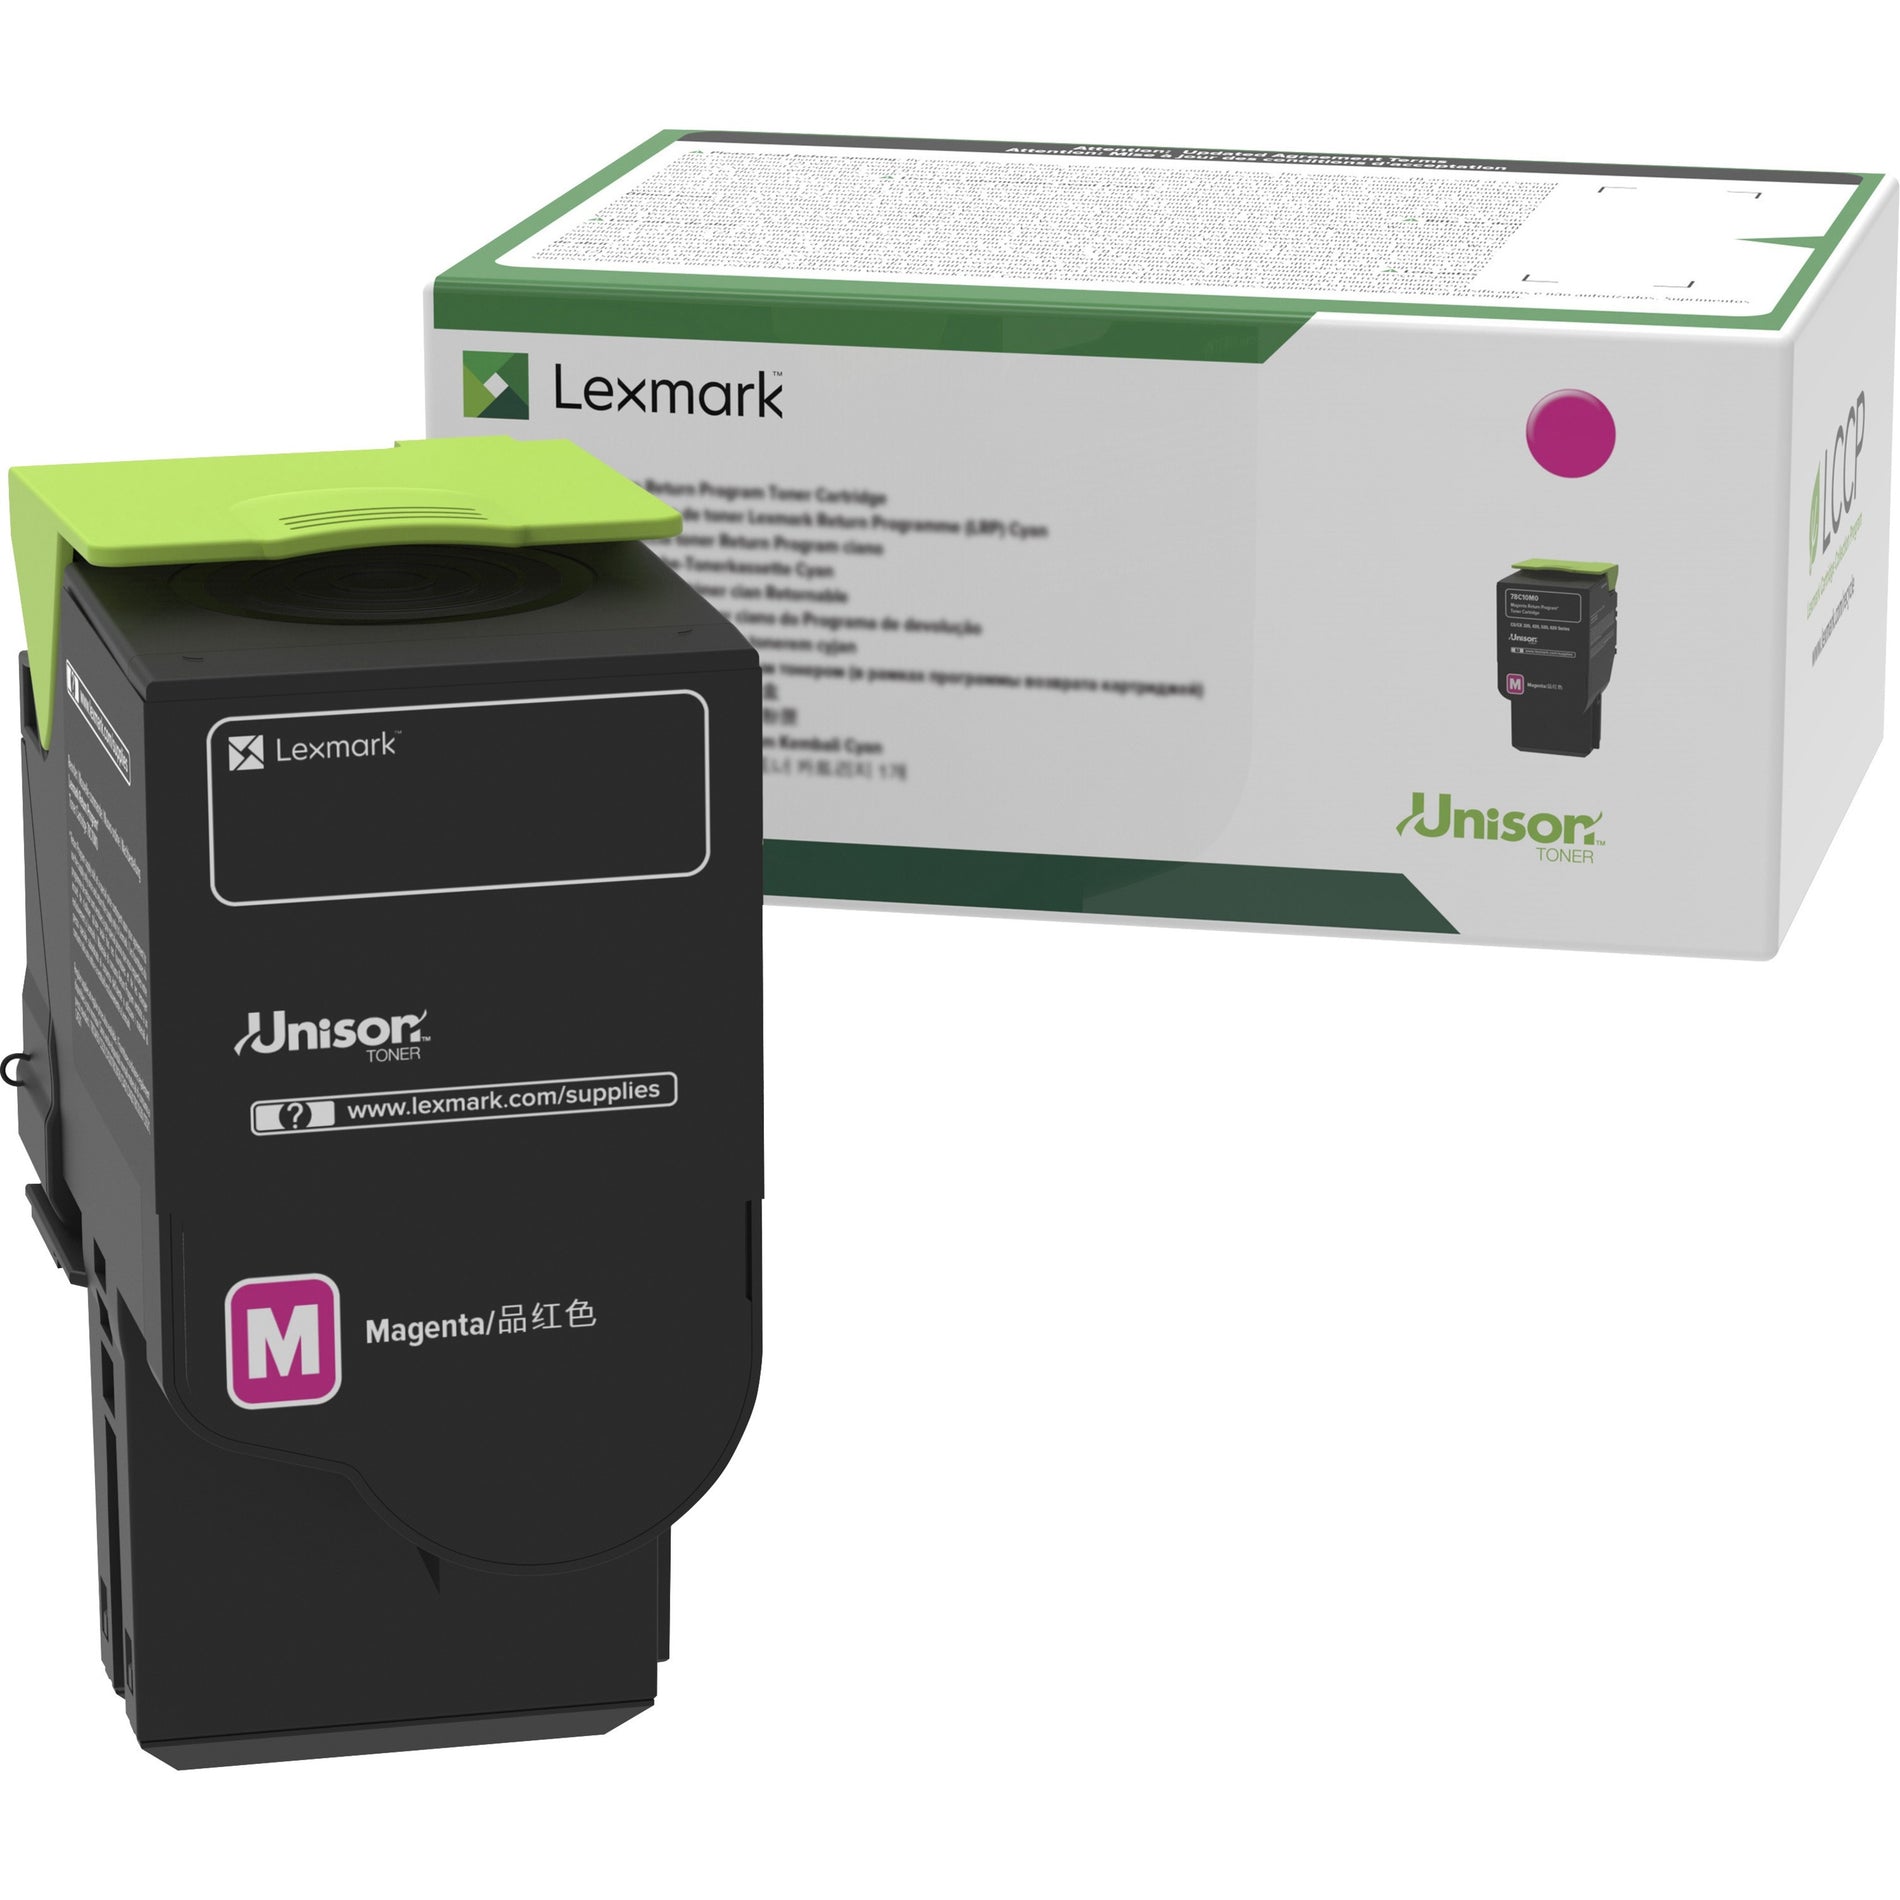 Lexmark 78C1UM0 紫色 超高产量 退货方案墨盒 7000页 品牌: 莱克马克 莱克马克